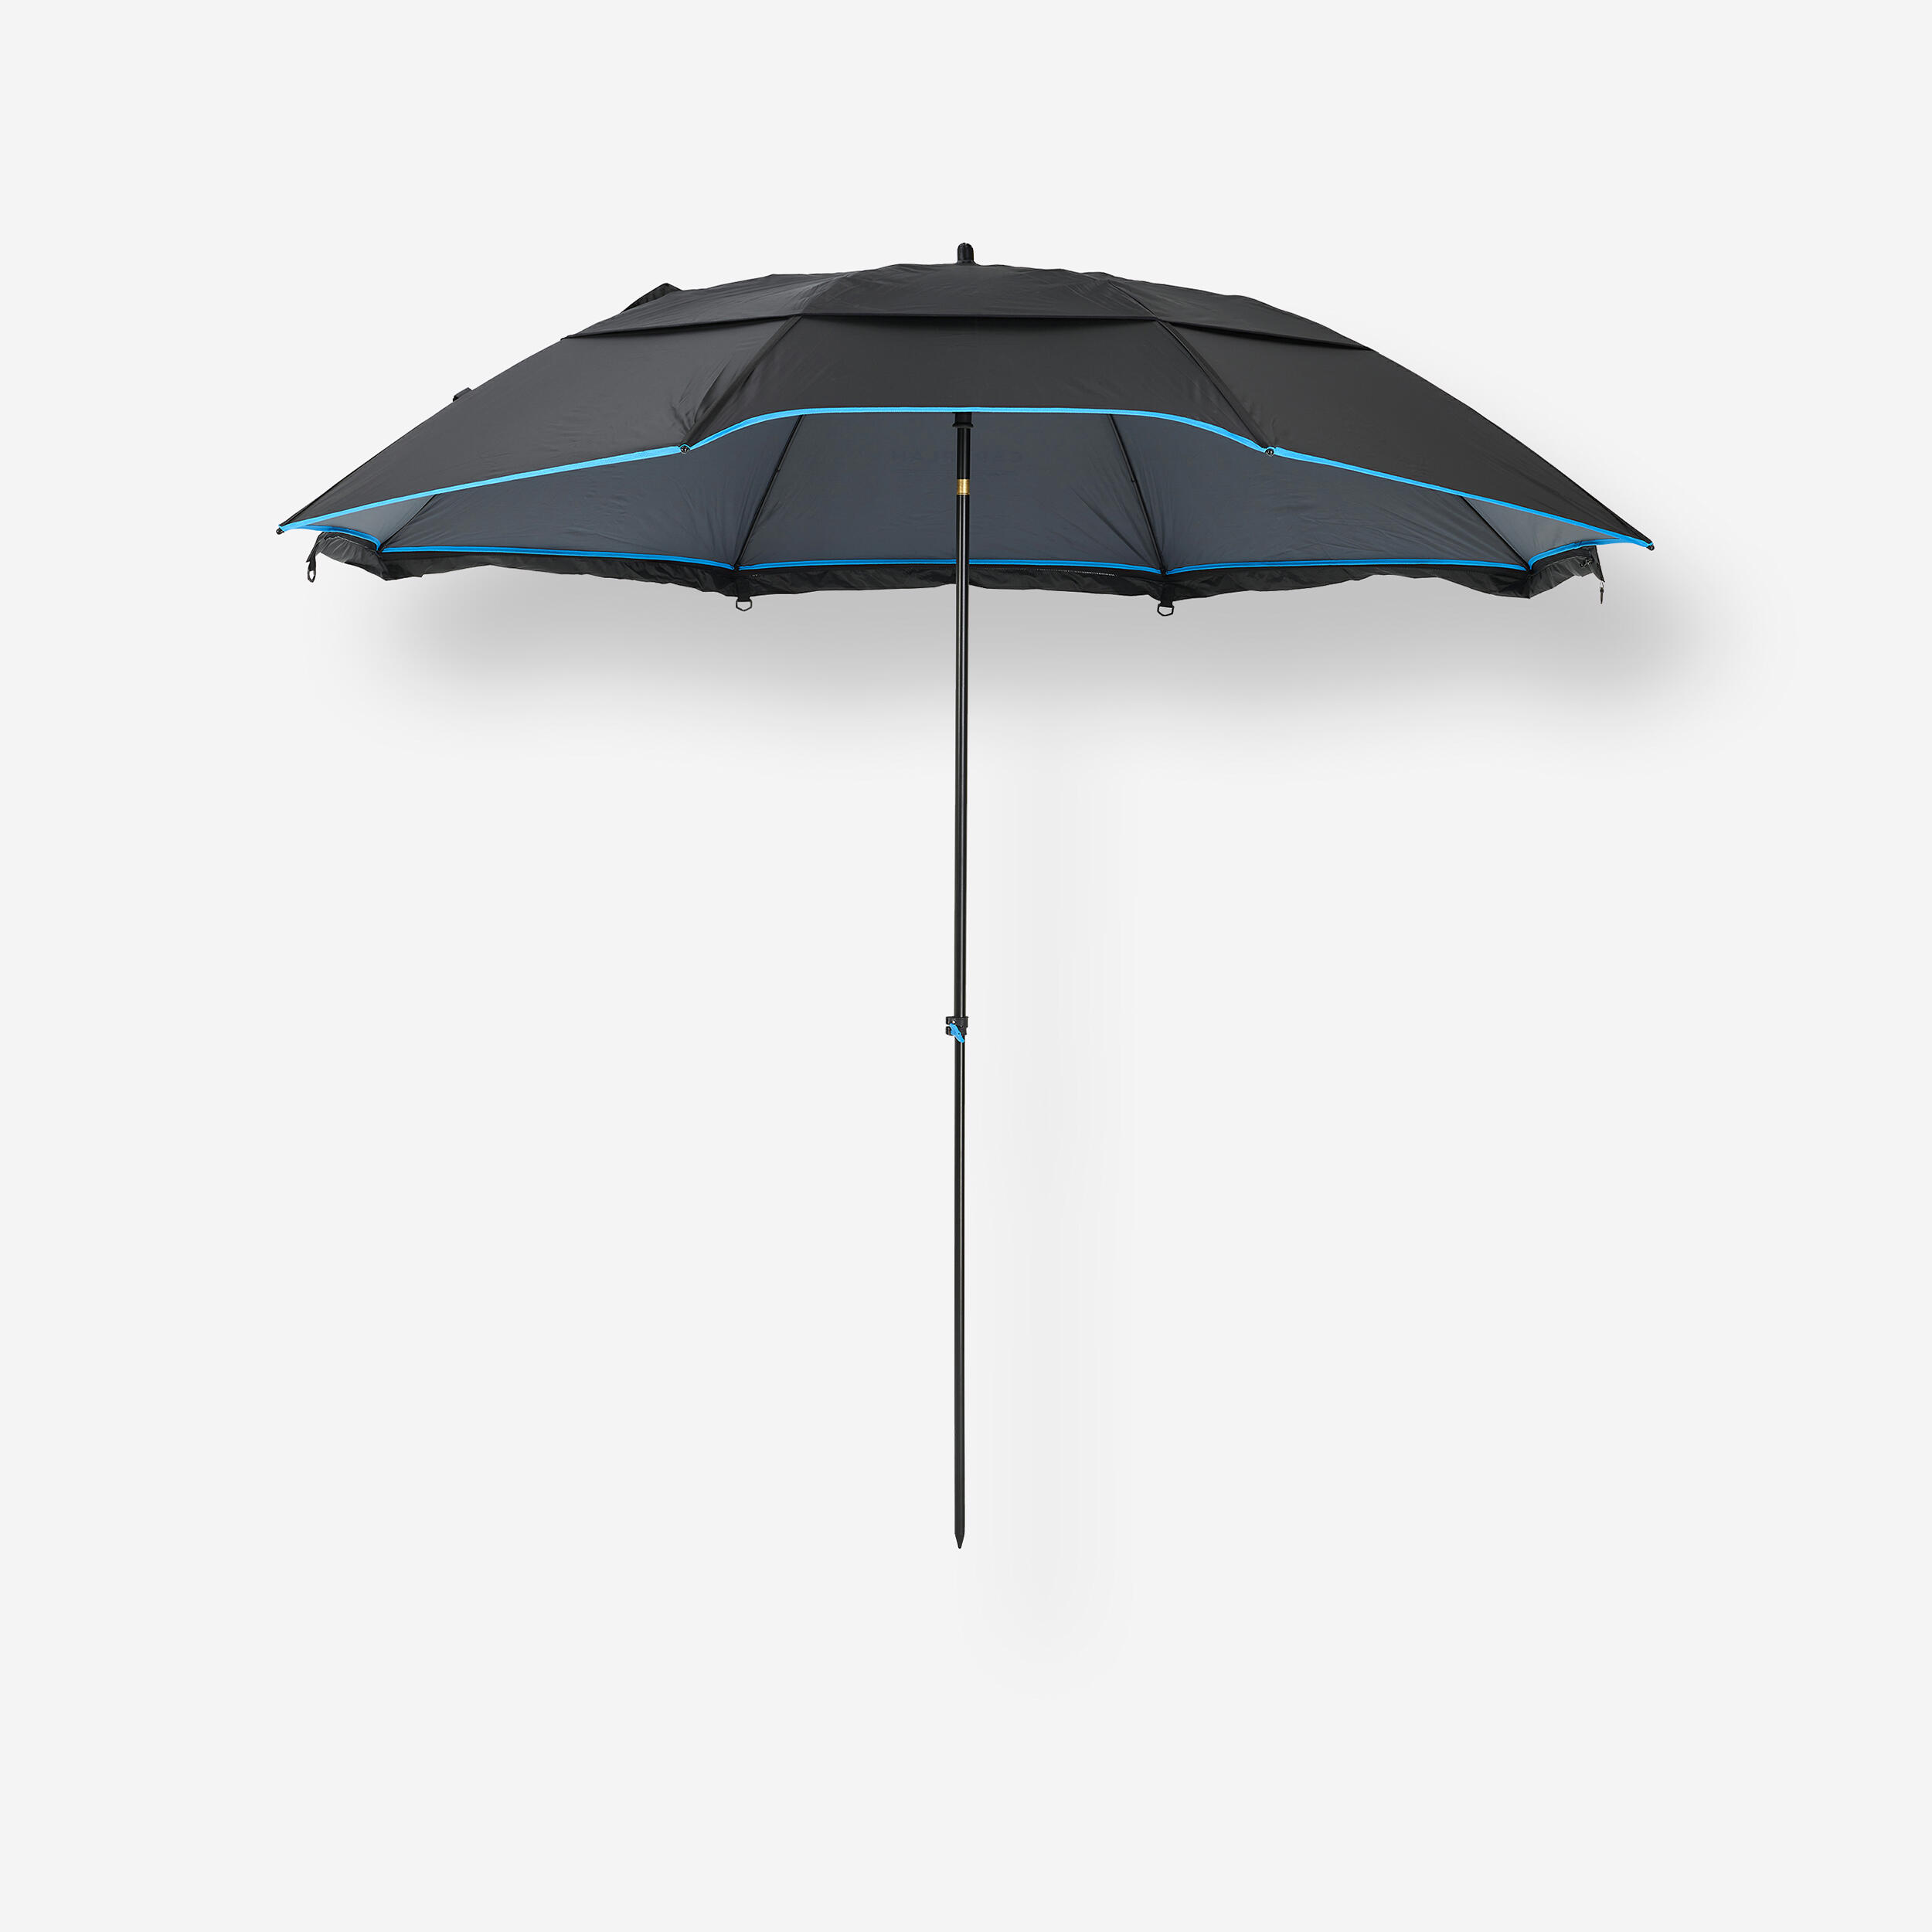 parapluie parasol de 2,3m de diametre pour la pratique de la pêche u500 xl - caperlan